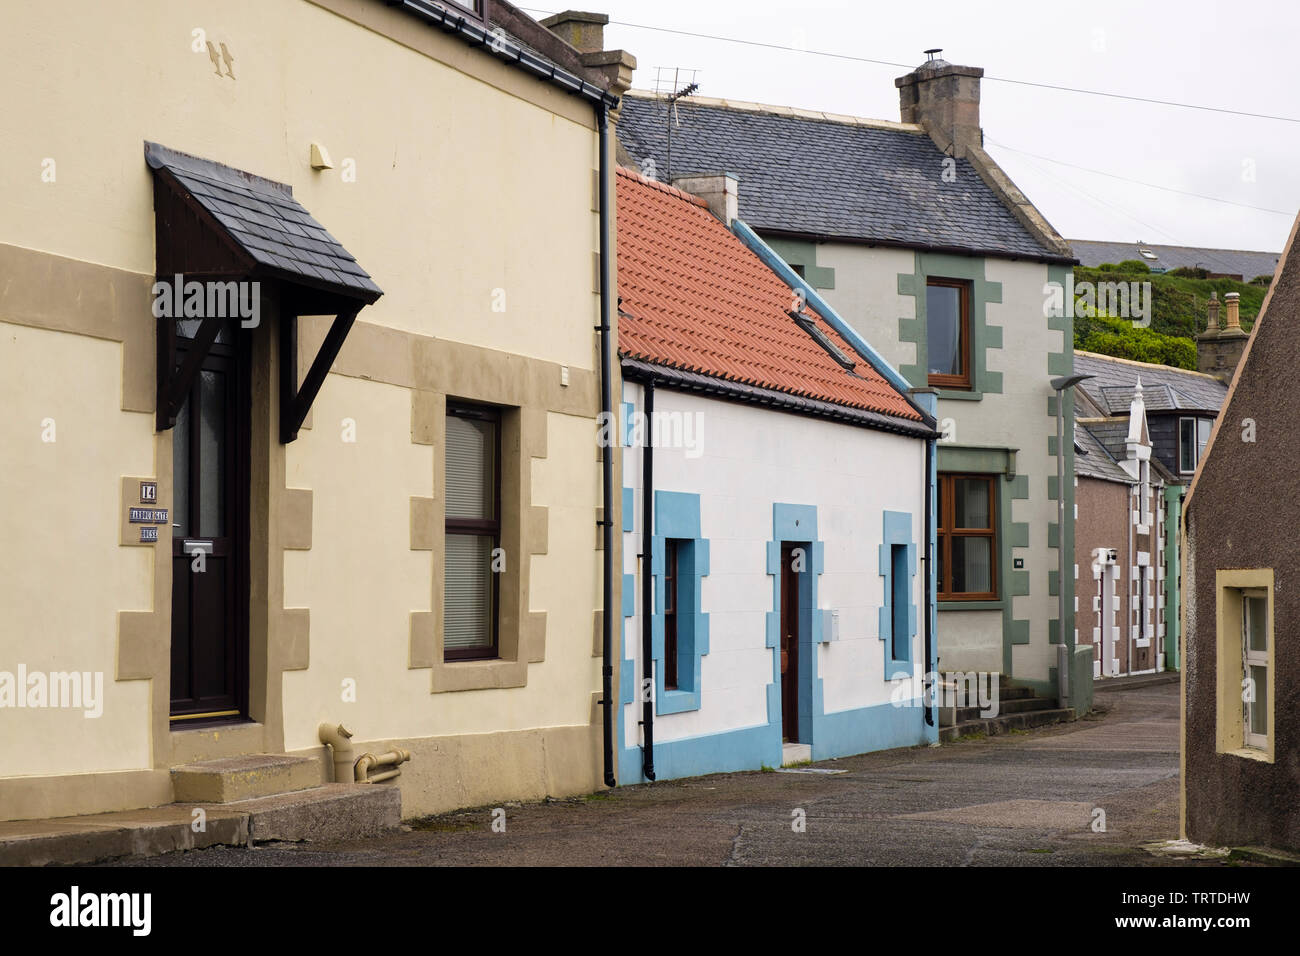 Traditionelle schottische Häuser auf einer schmalen Straße in einem Fischerdorf. Findochty, Moray, Schottland, Großbritannien, Großbritannien Stockfoto